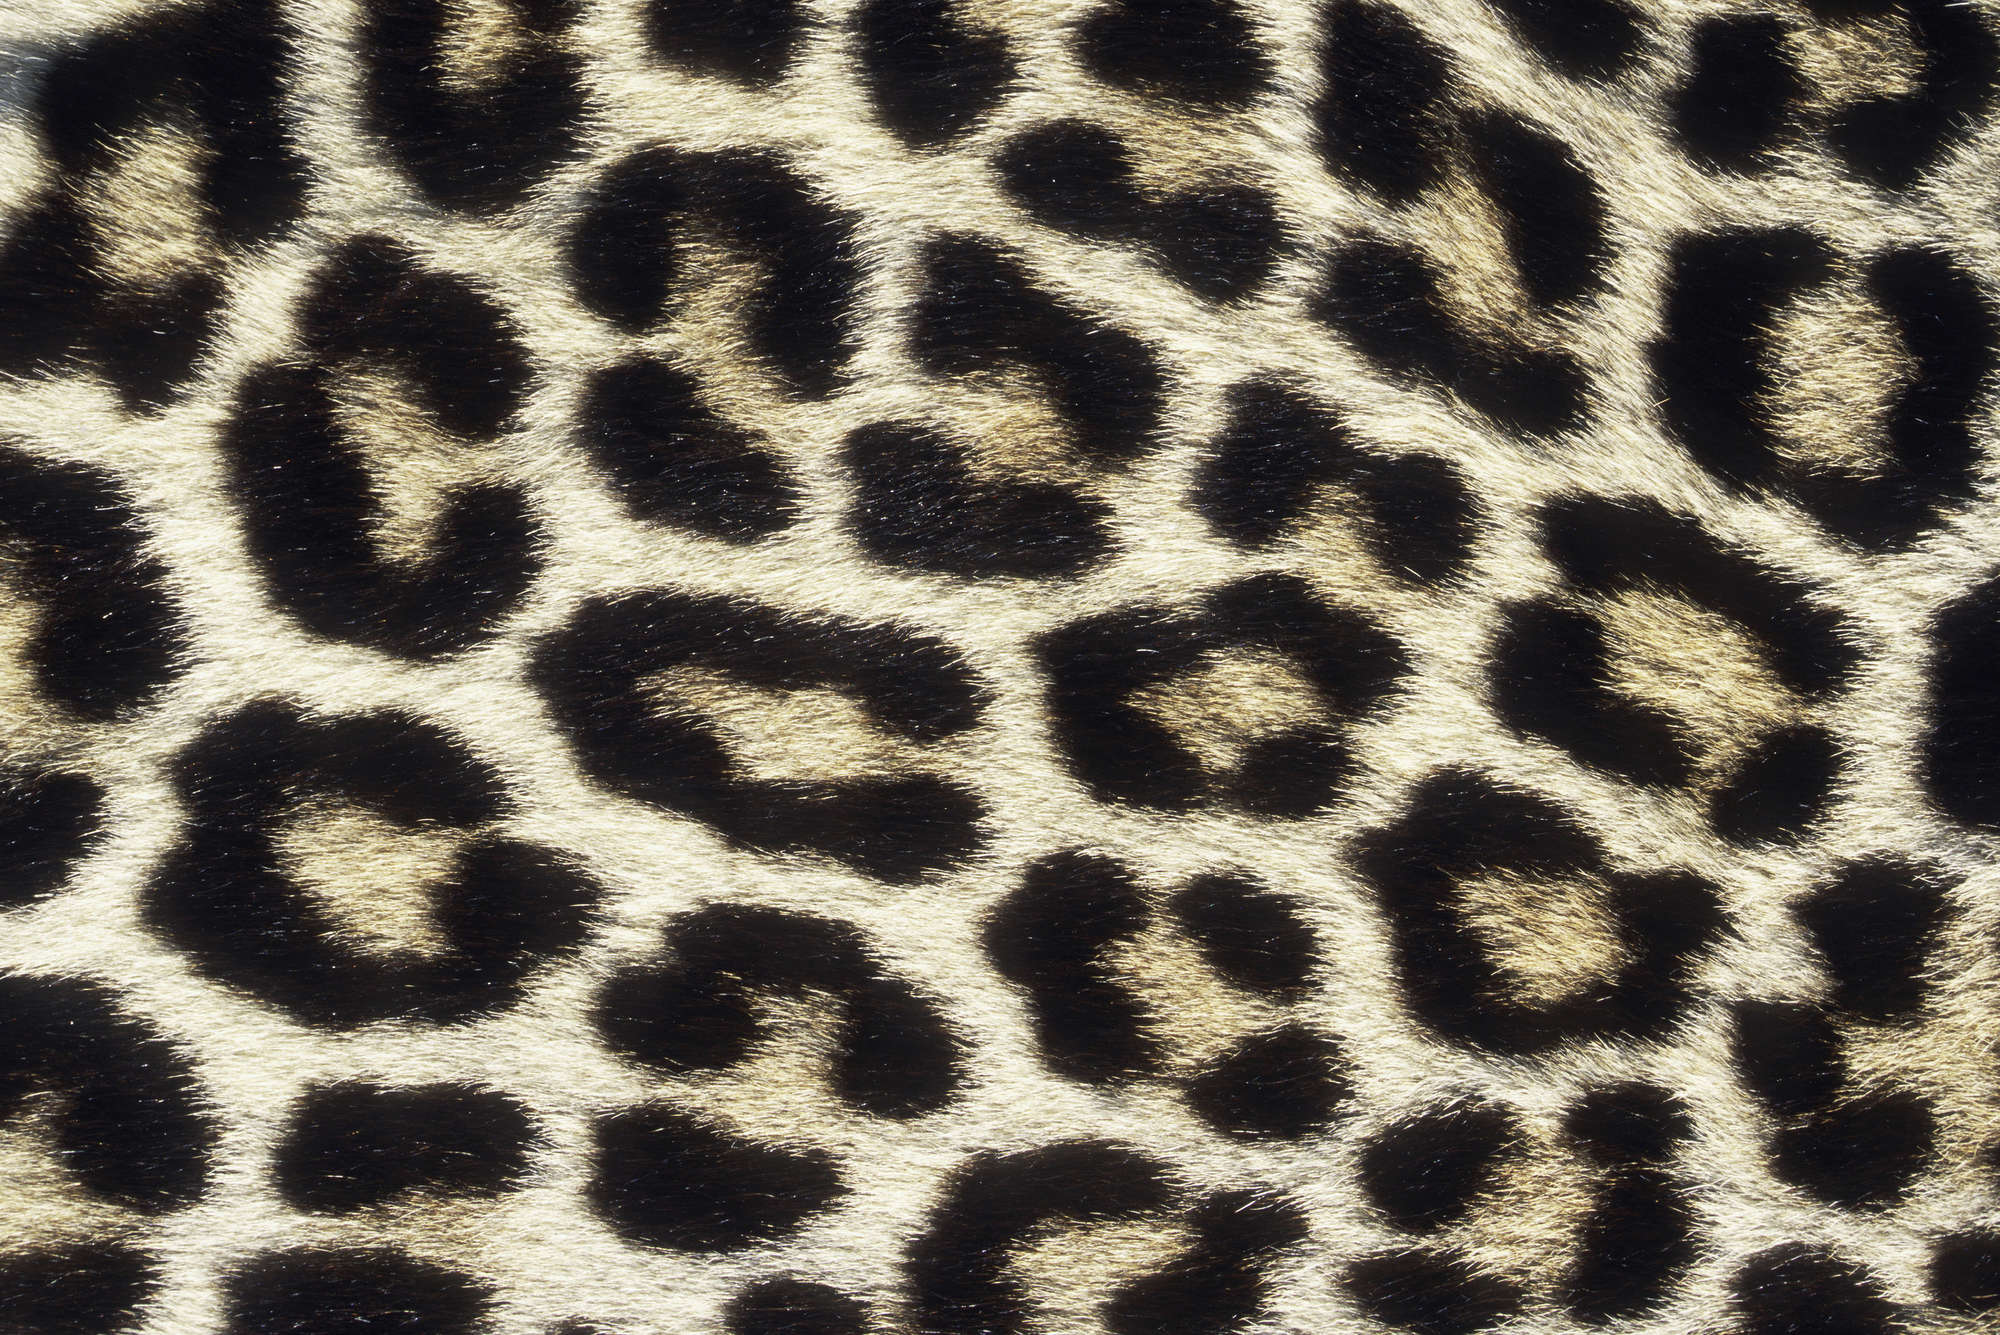             Fototapete mit Leopardenmuster – Mattes Glattvlies
        